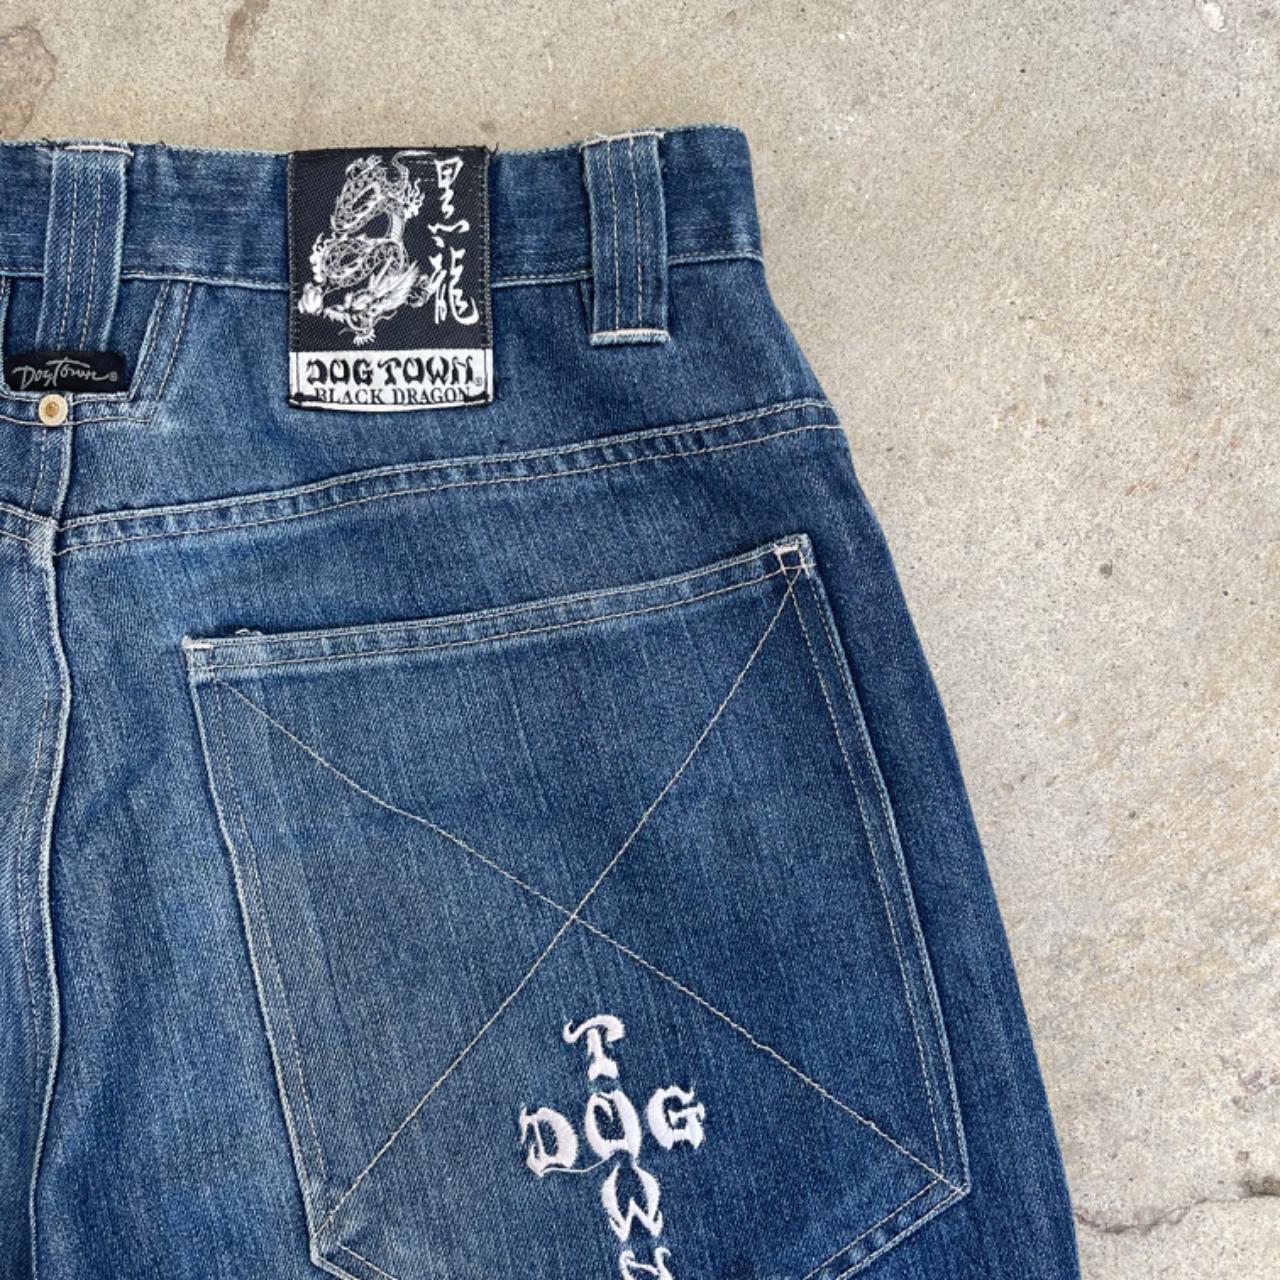 Vintage dog town baggy skate jeans - size 31 waist - Depop